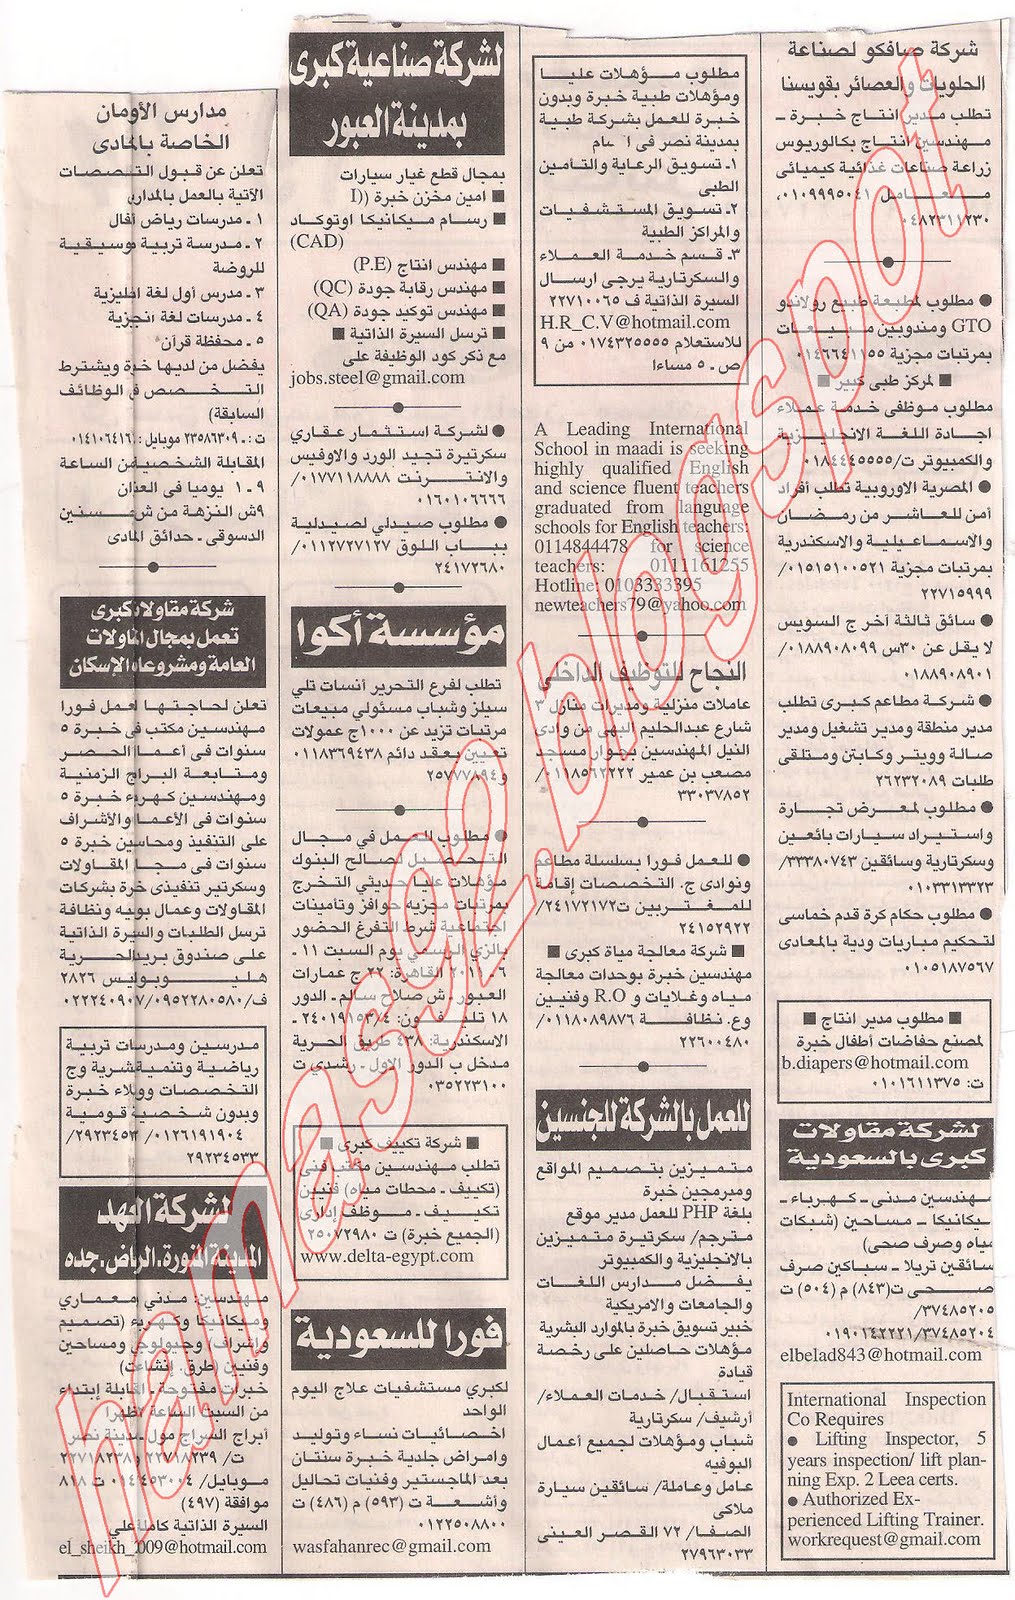 وظائف اهرام الجمعة 10 يونيو 2011 - الجزء الثانى Picture+006